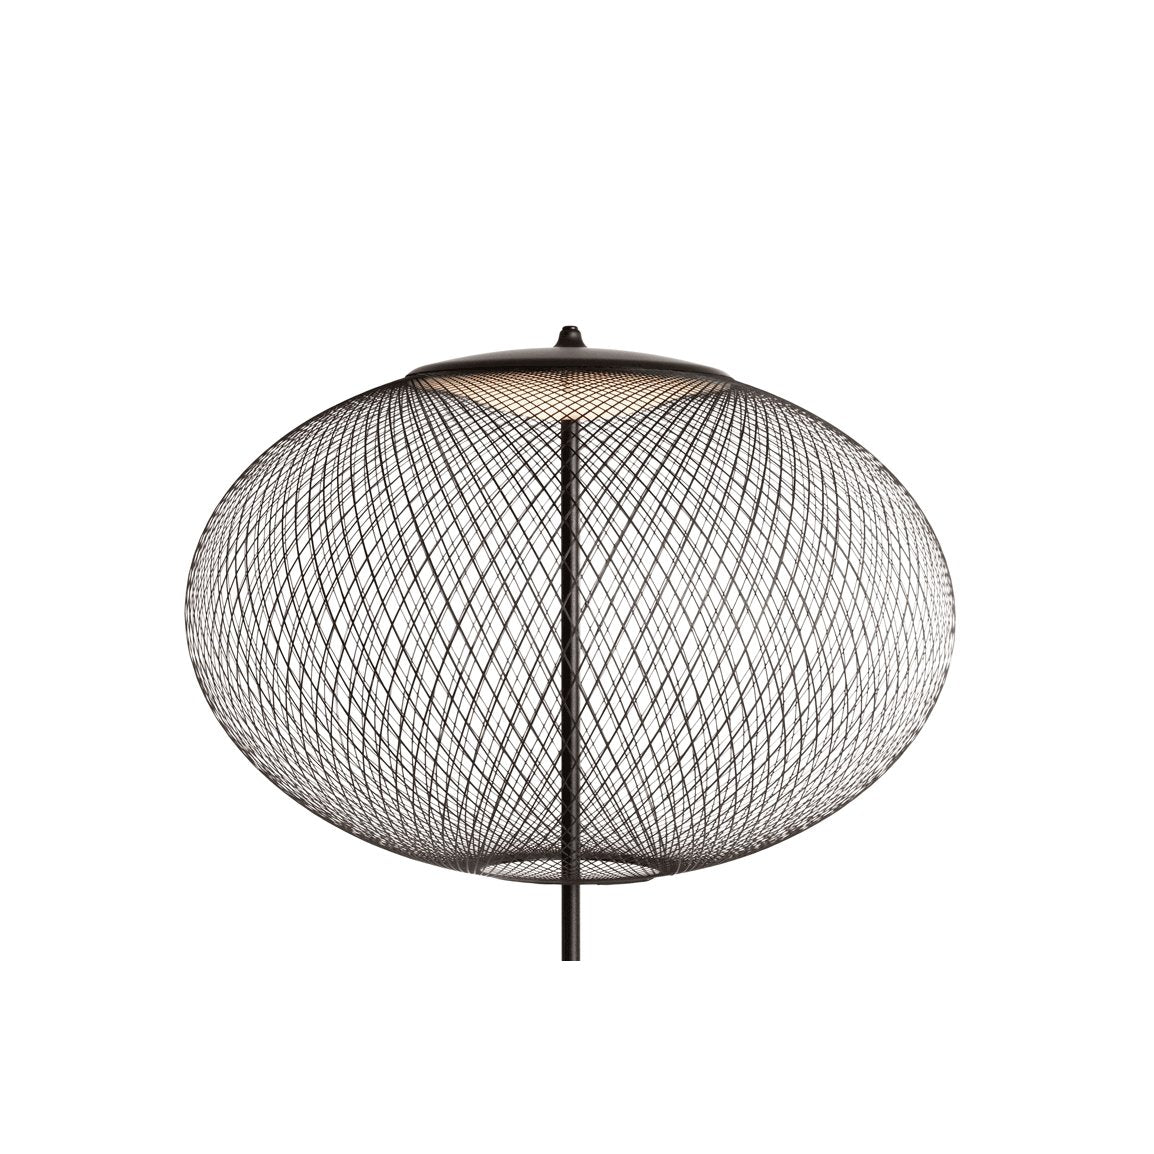 NR2 Floor Lamp - Curated - Lighting - Moooi